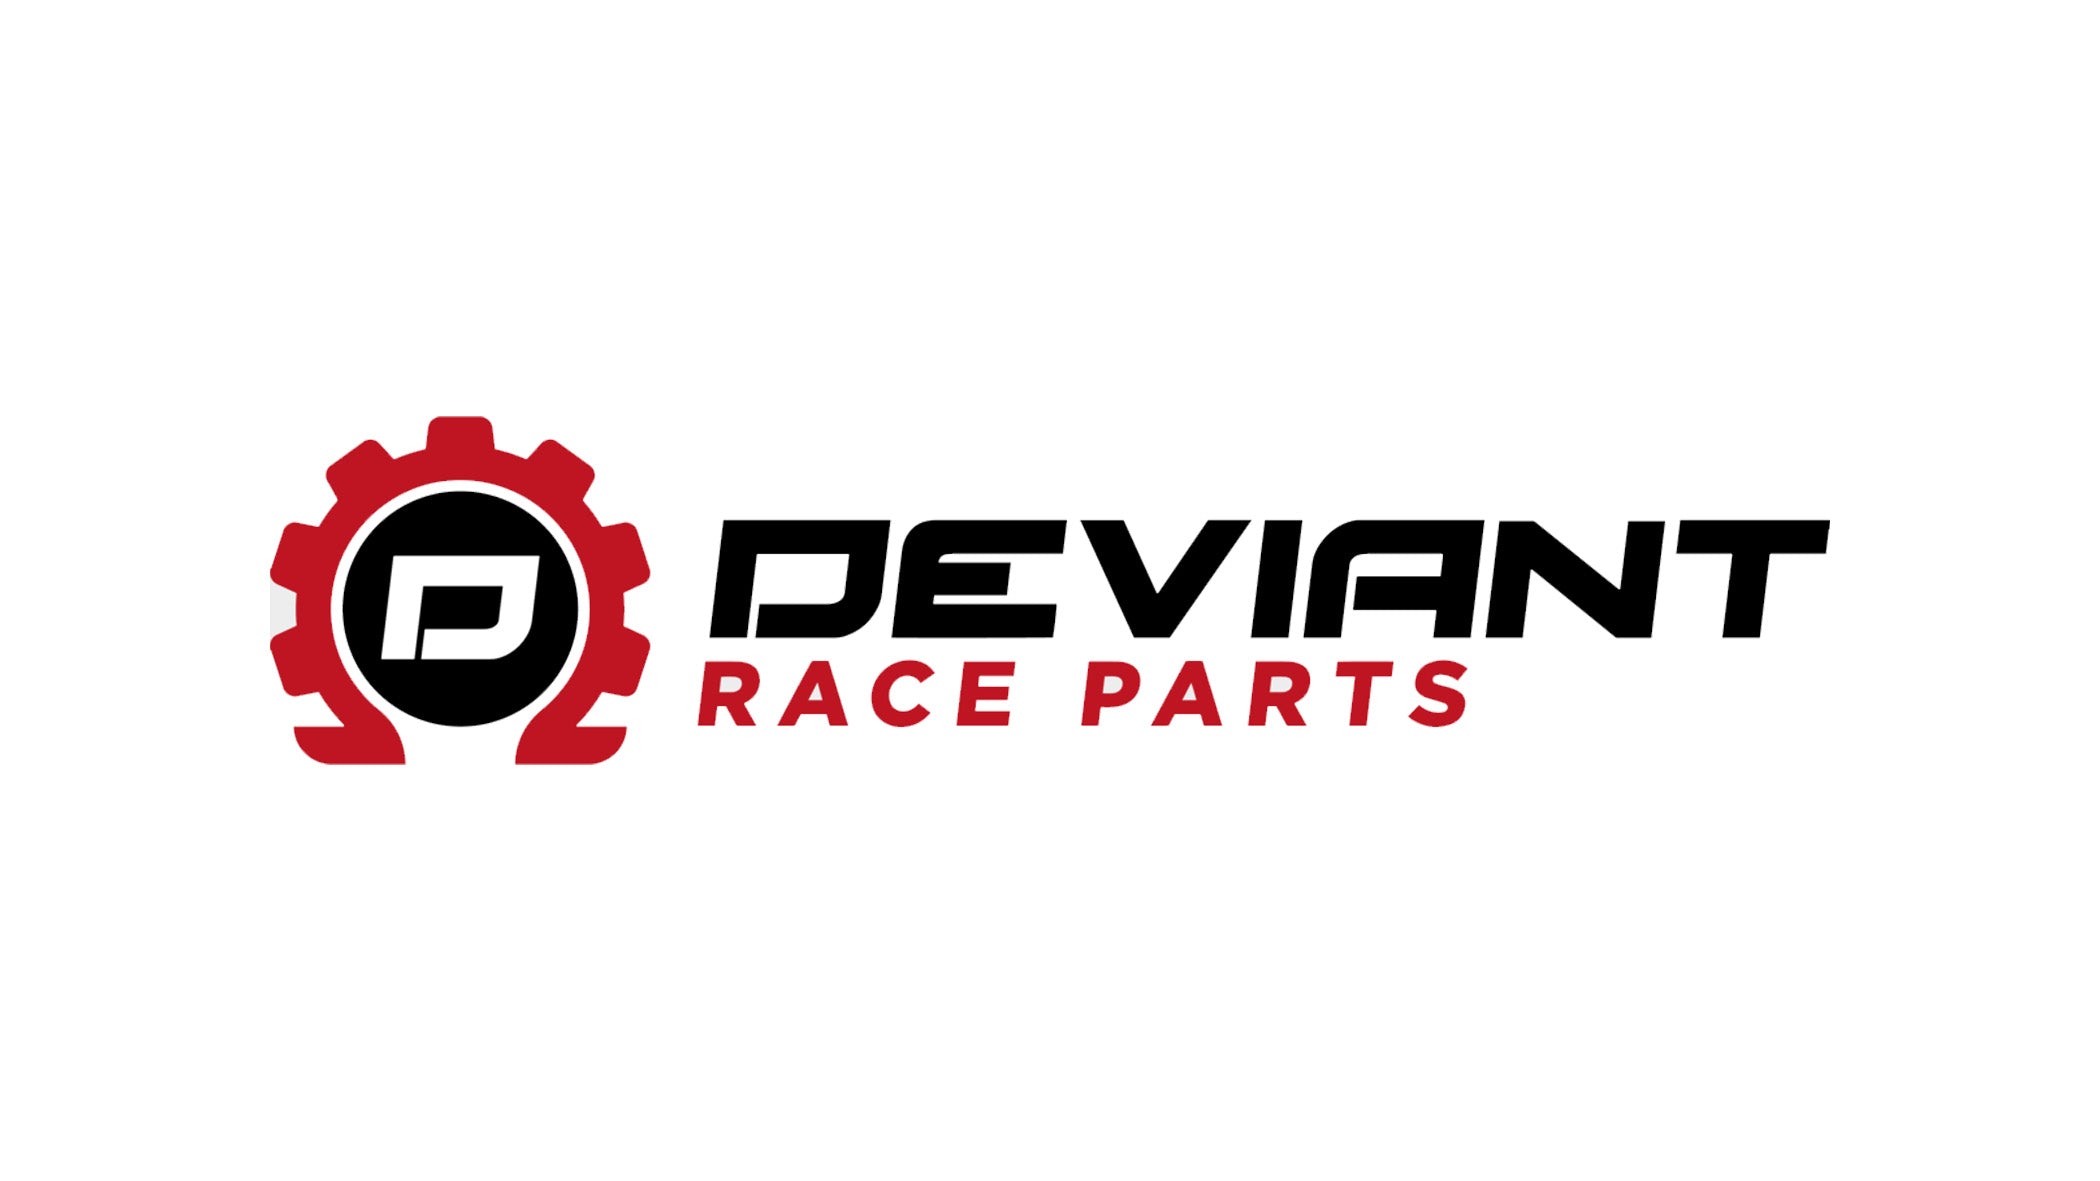 DEVIANT RACE PARTS